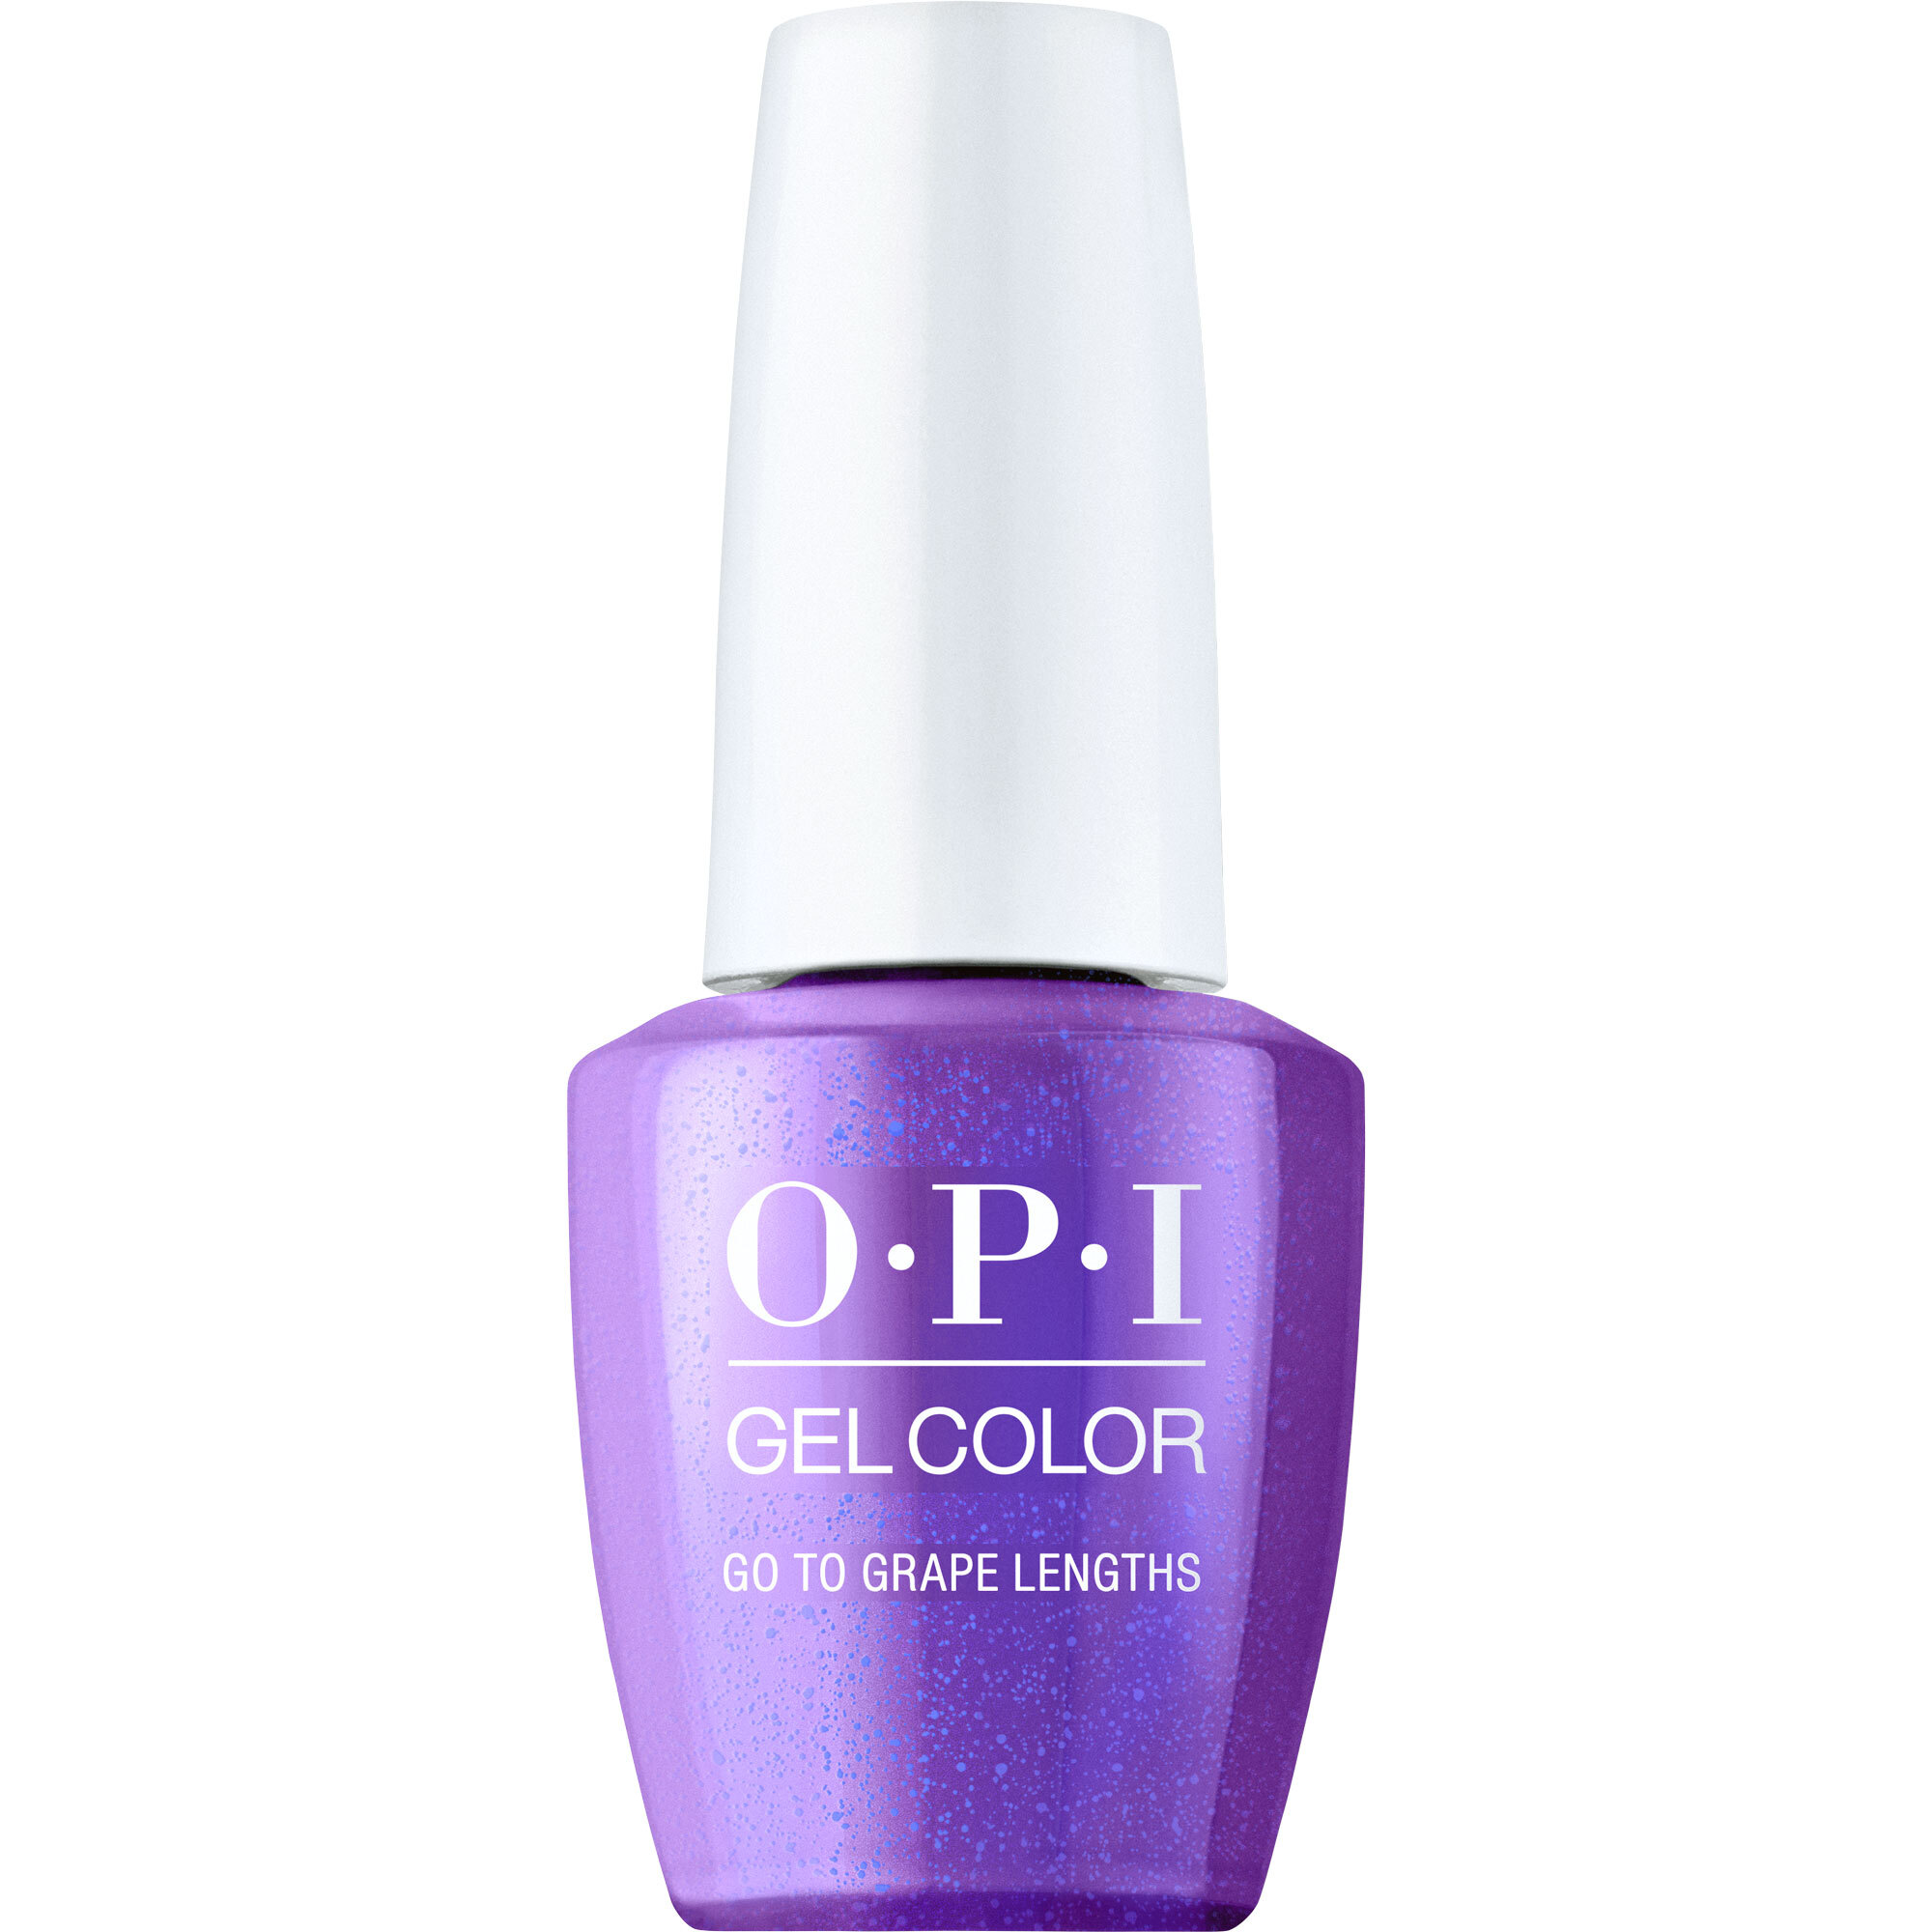 OPI Gel Color 360 - Go to Grape Lengths